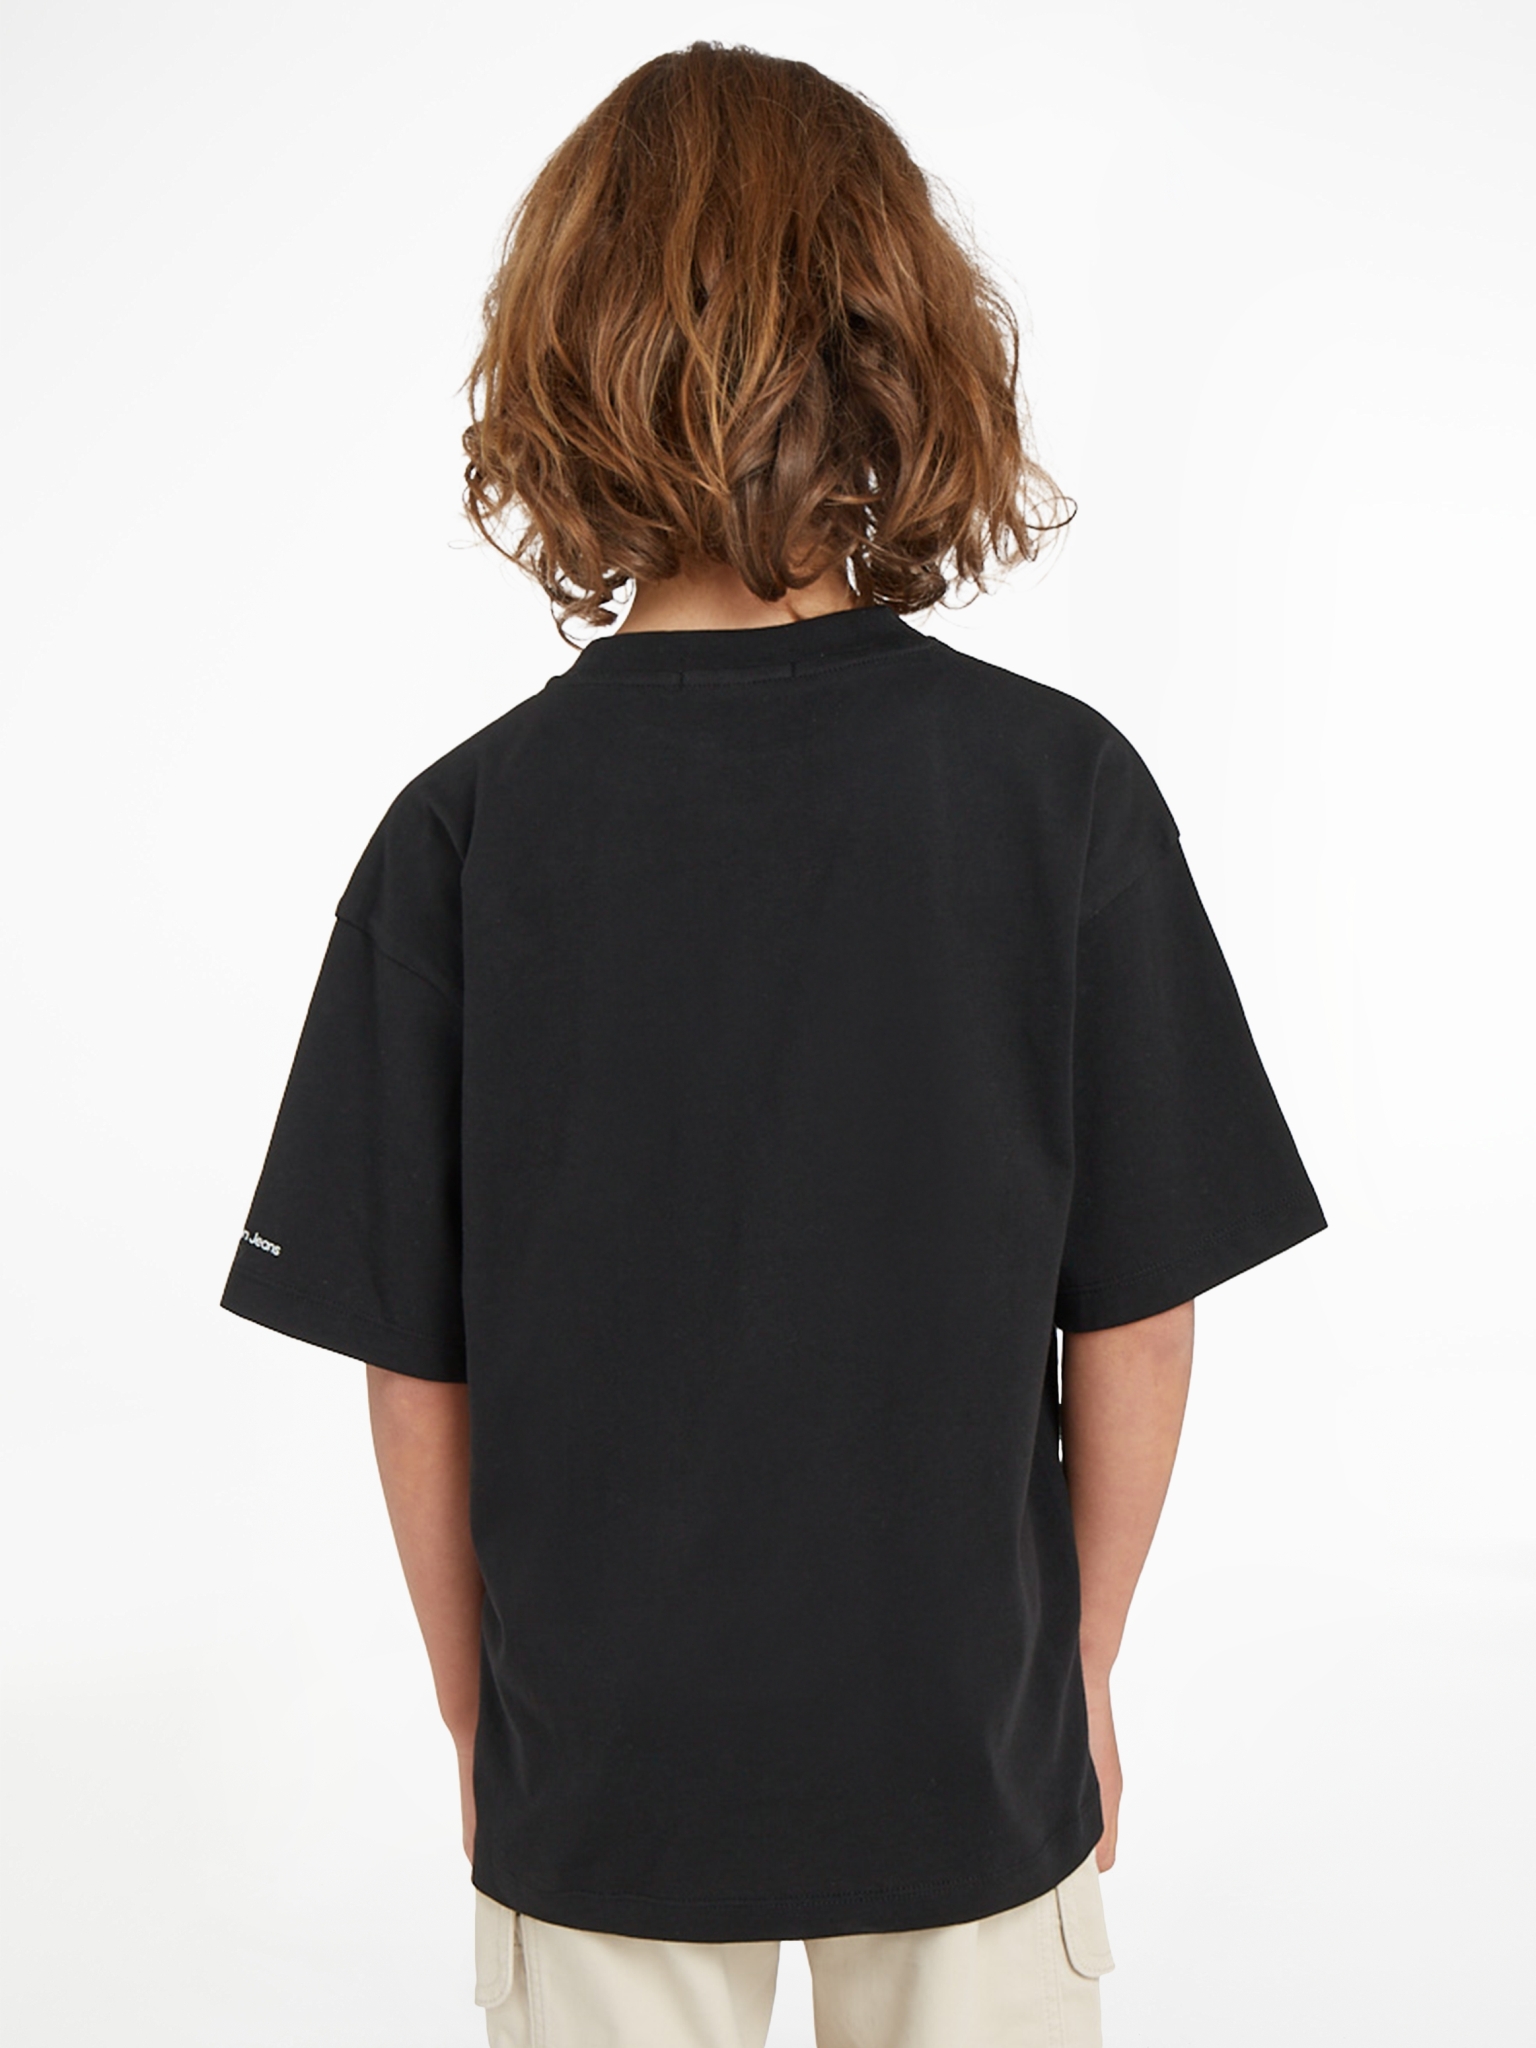 CALVIN KLEIN T-Shirt mit Grafik in Glitch-Optik 10704941 kaufen | WÖHRL